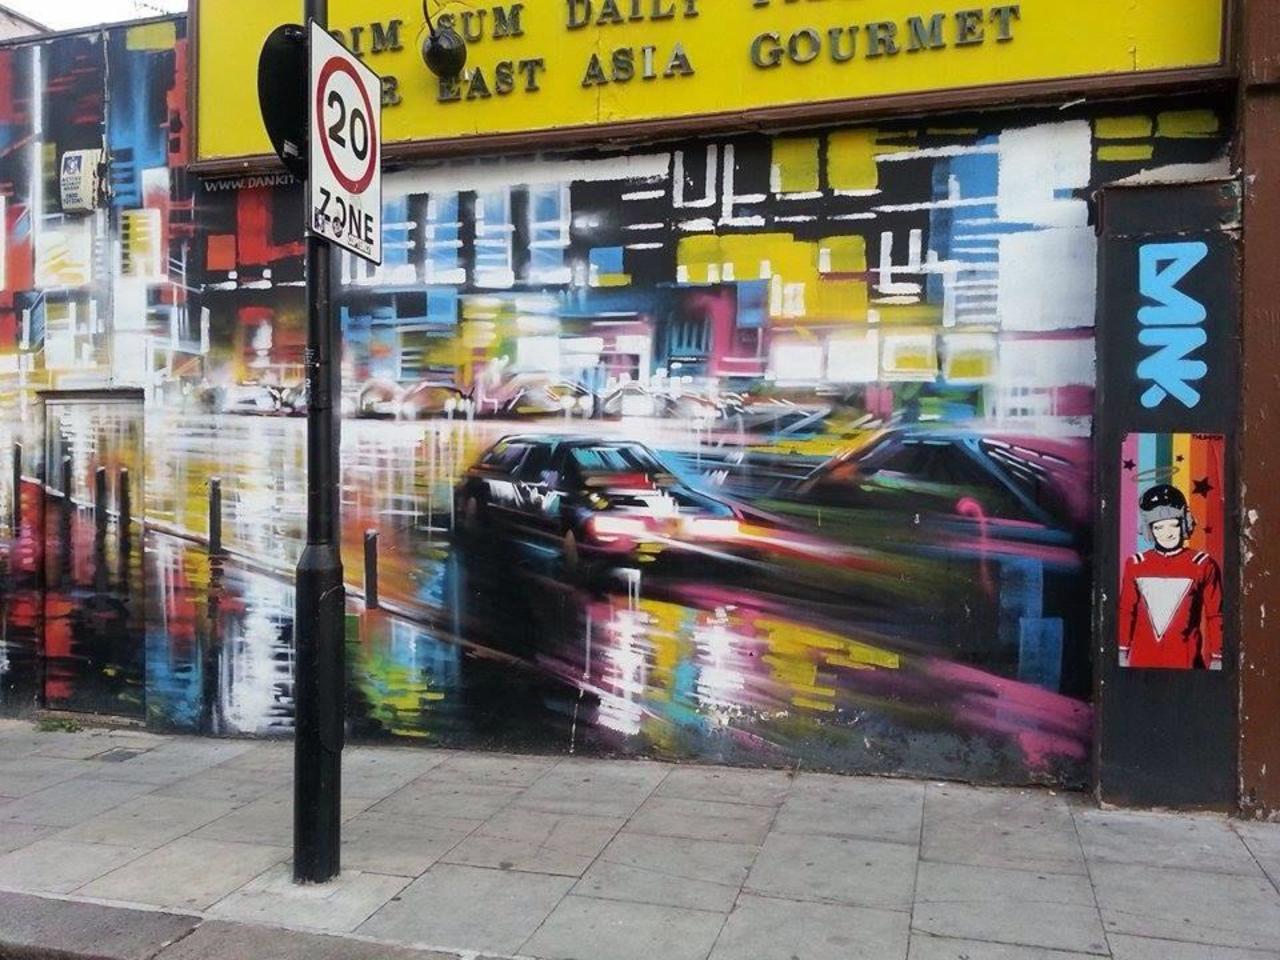 #Graffiti in London.
#Art http://t.co/IvKVANabPH